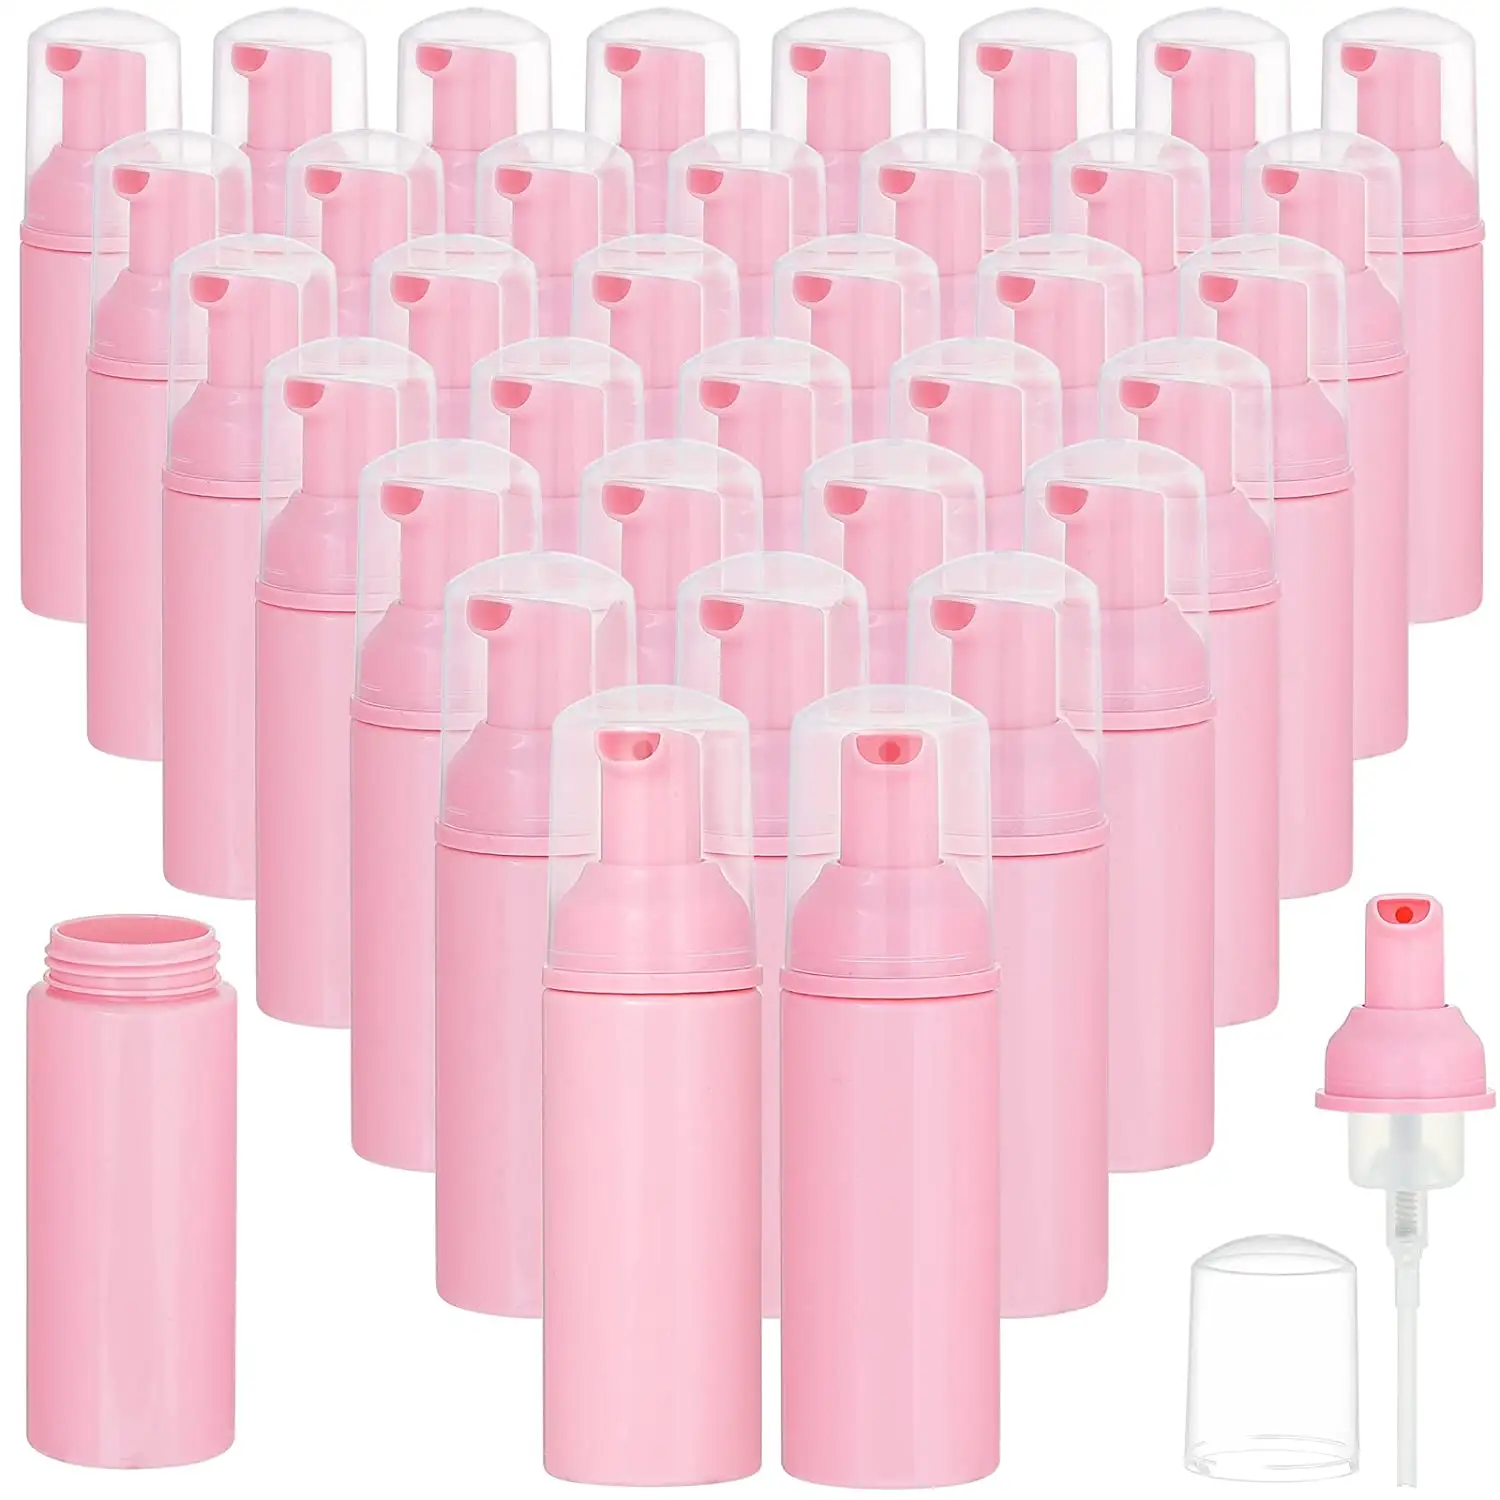 Mini bouteille de Mousse nettoyante, 40Ml, 50 Ml, 4 Oz, 150Ml, bain, lavage des cils, Mousse rose givrée, pompe, bouteille de shampoing pour cils